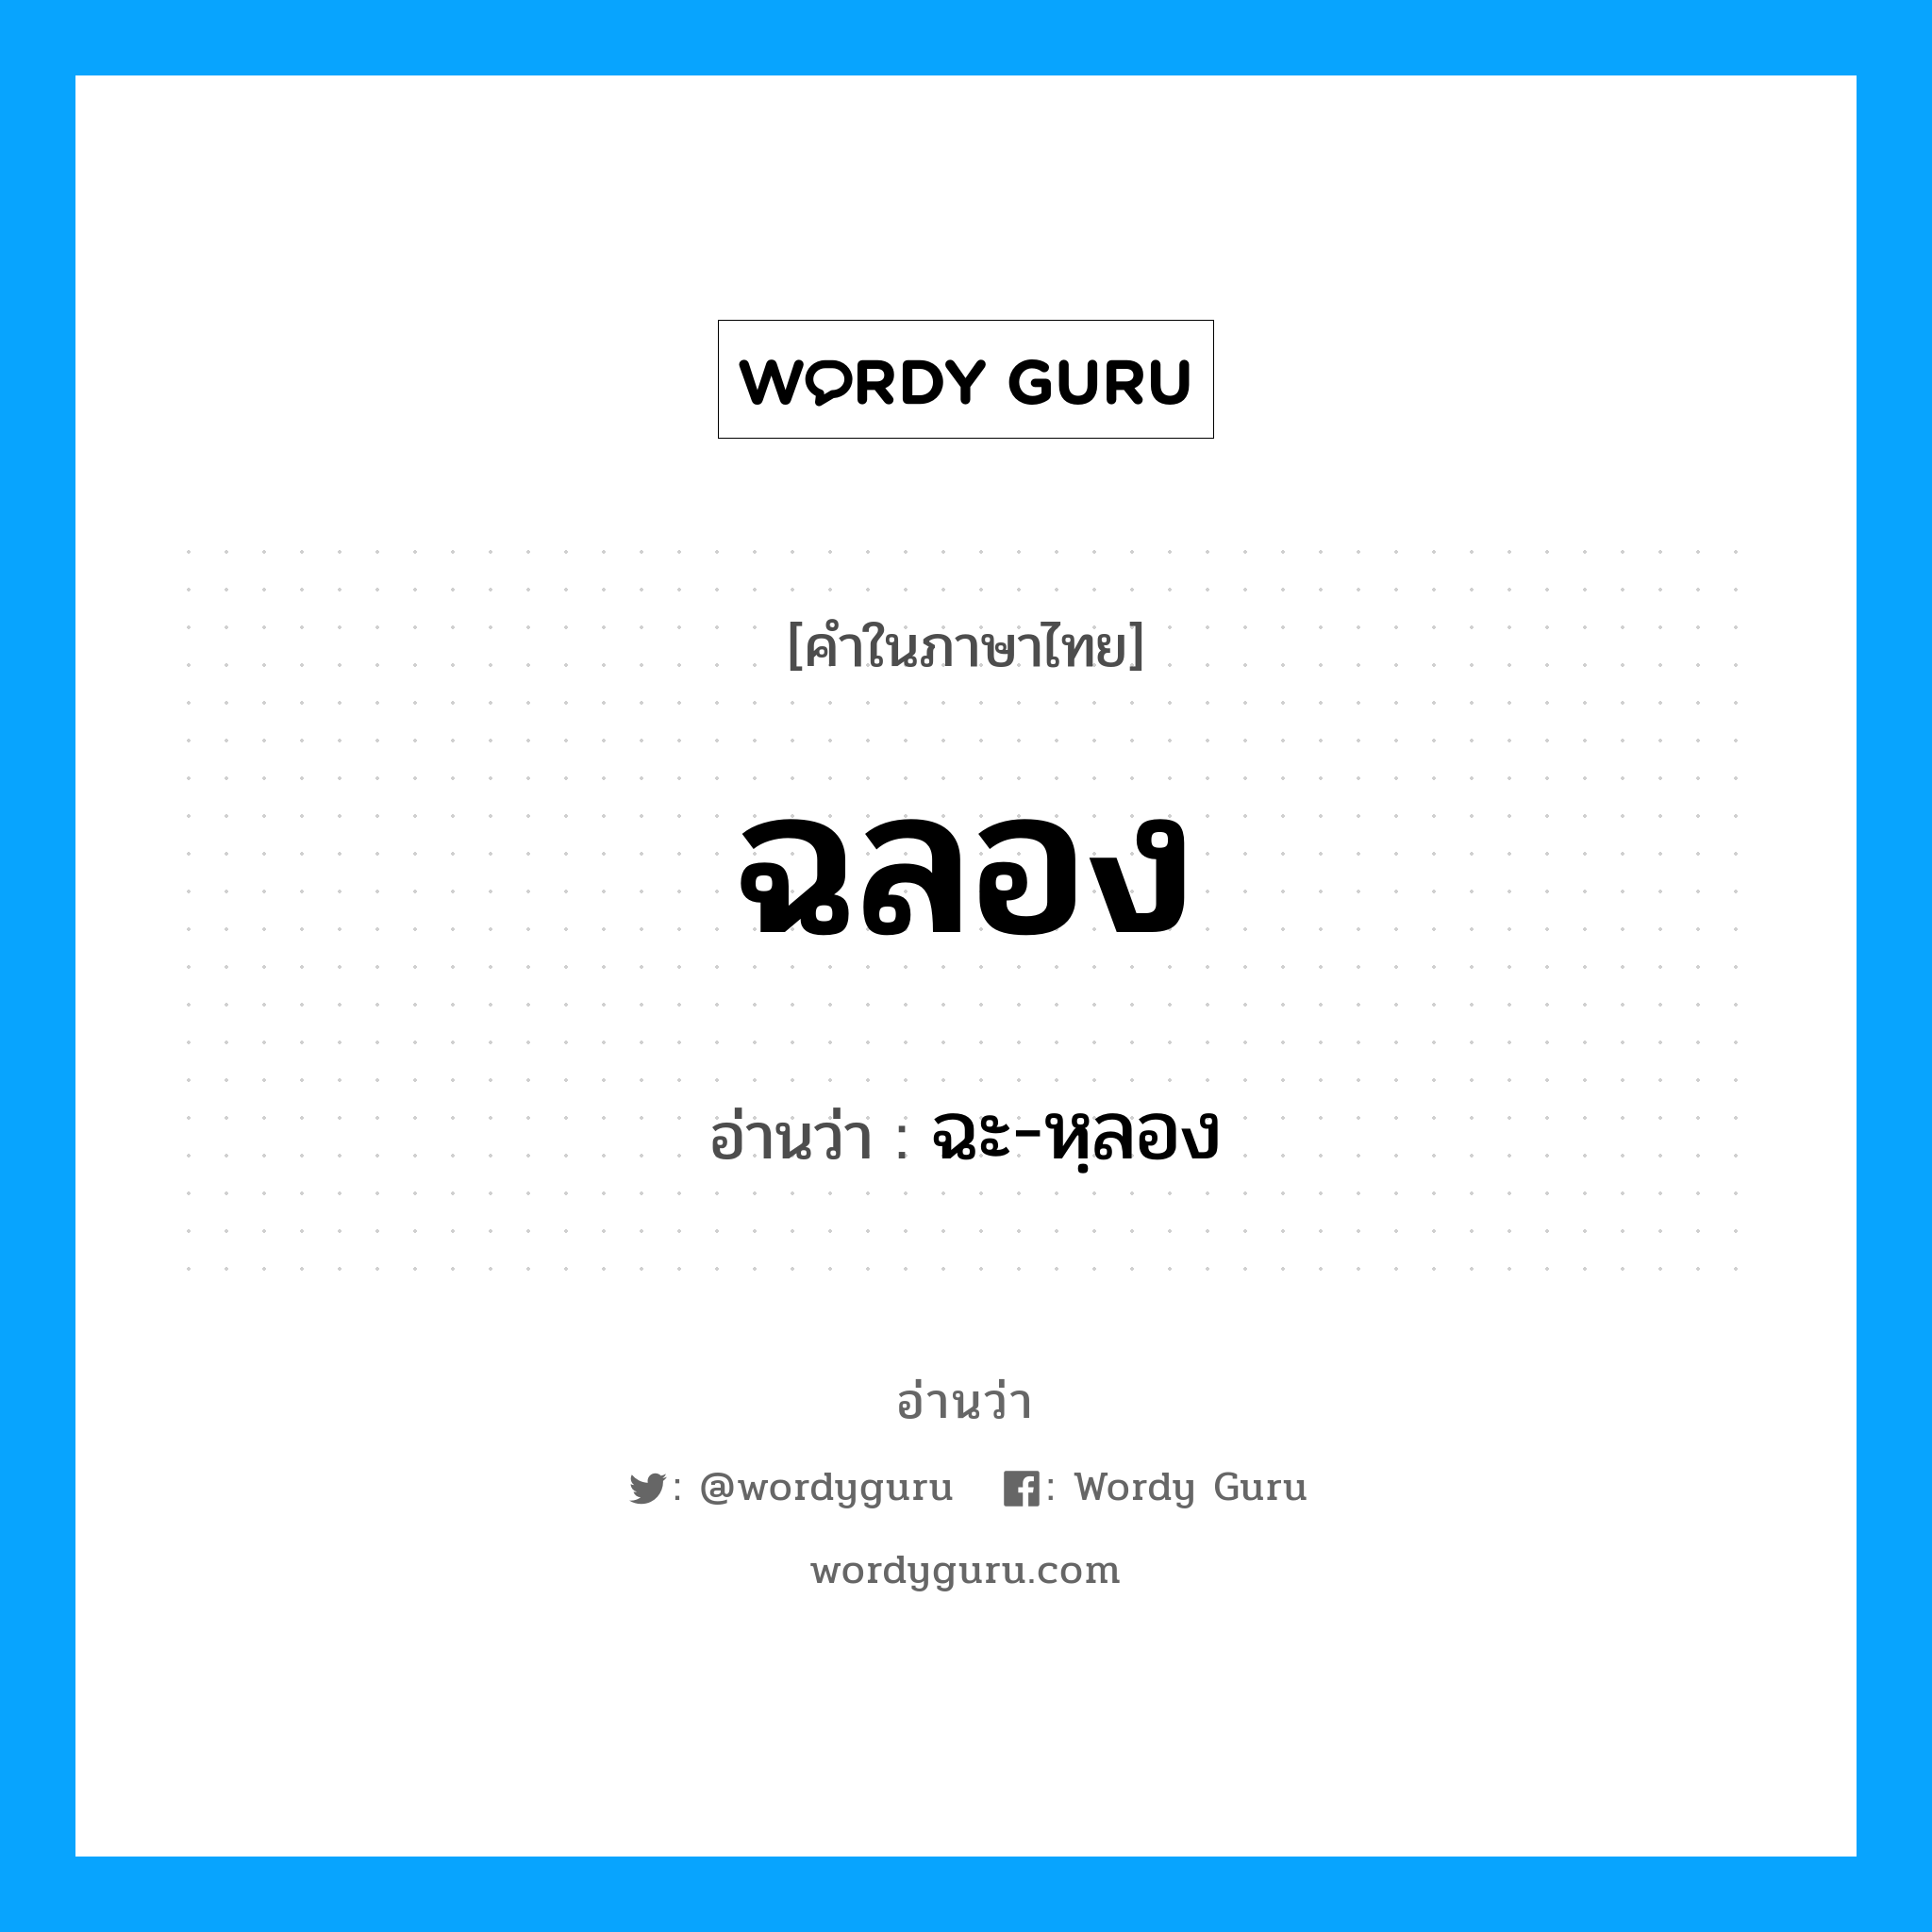 ฉะ-หฺลอง เป็นคำอ่านของคำไหน?, คำในภาษาไทย ฉะ-หฺลอง อ่านว่า ฉลอง